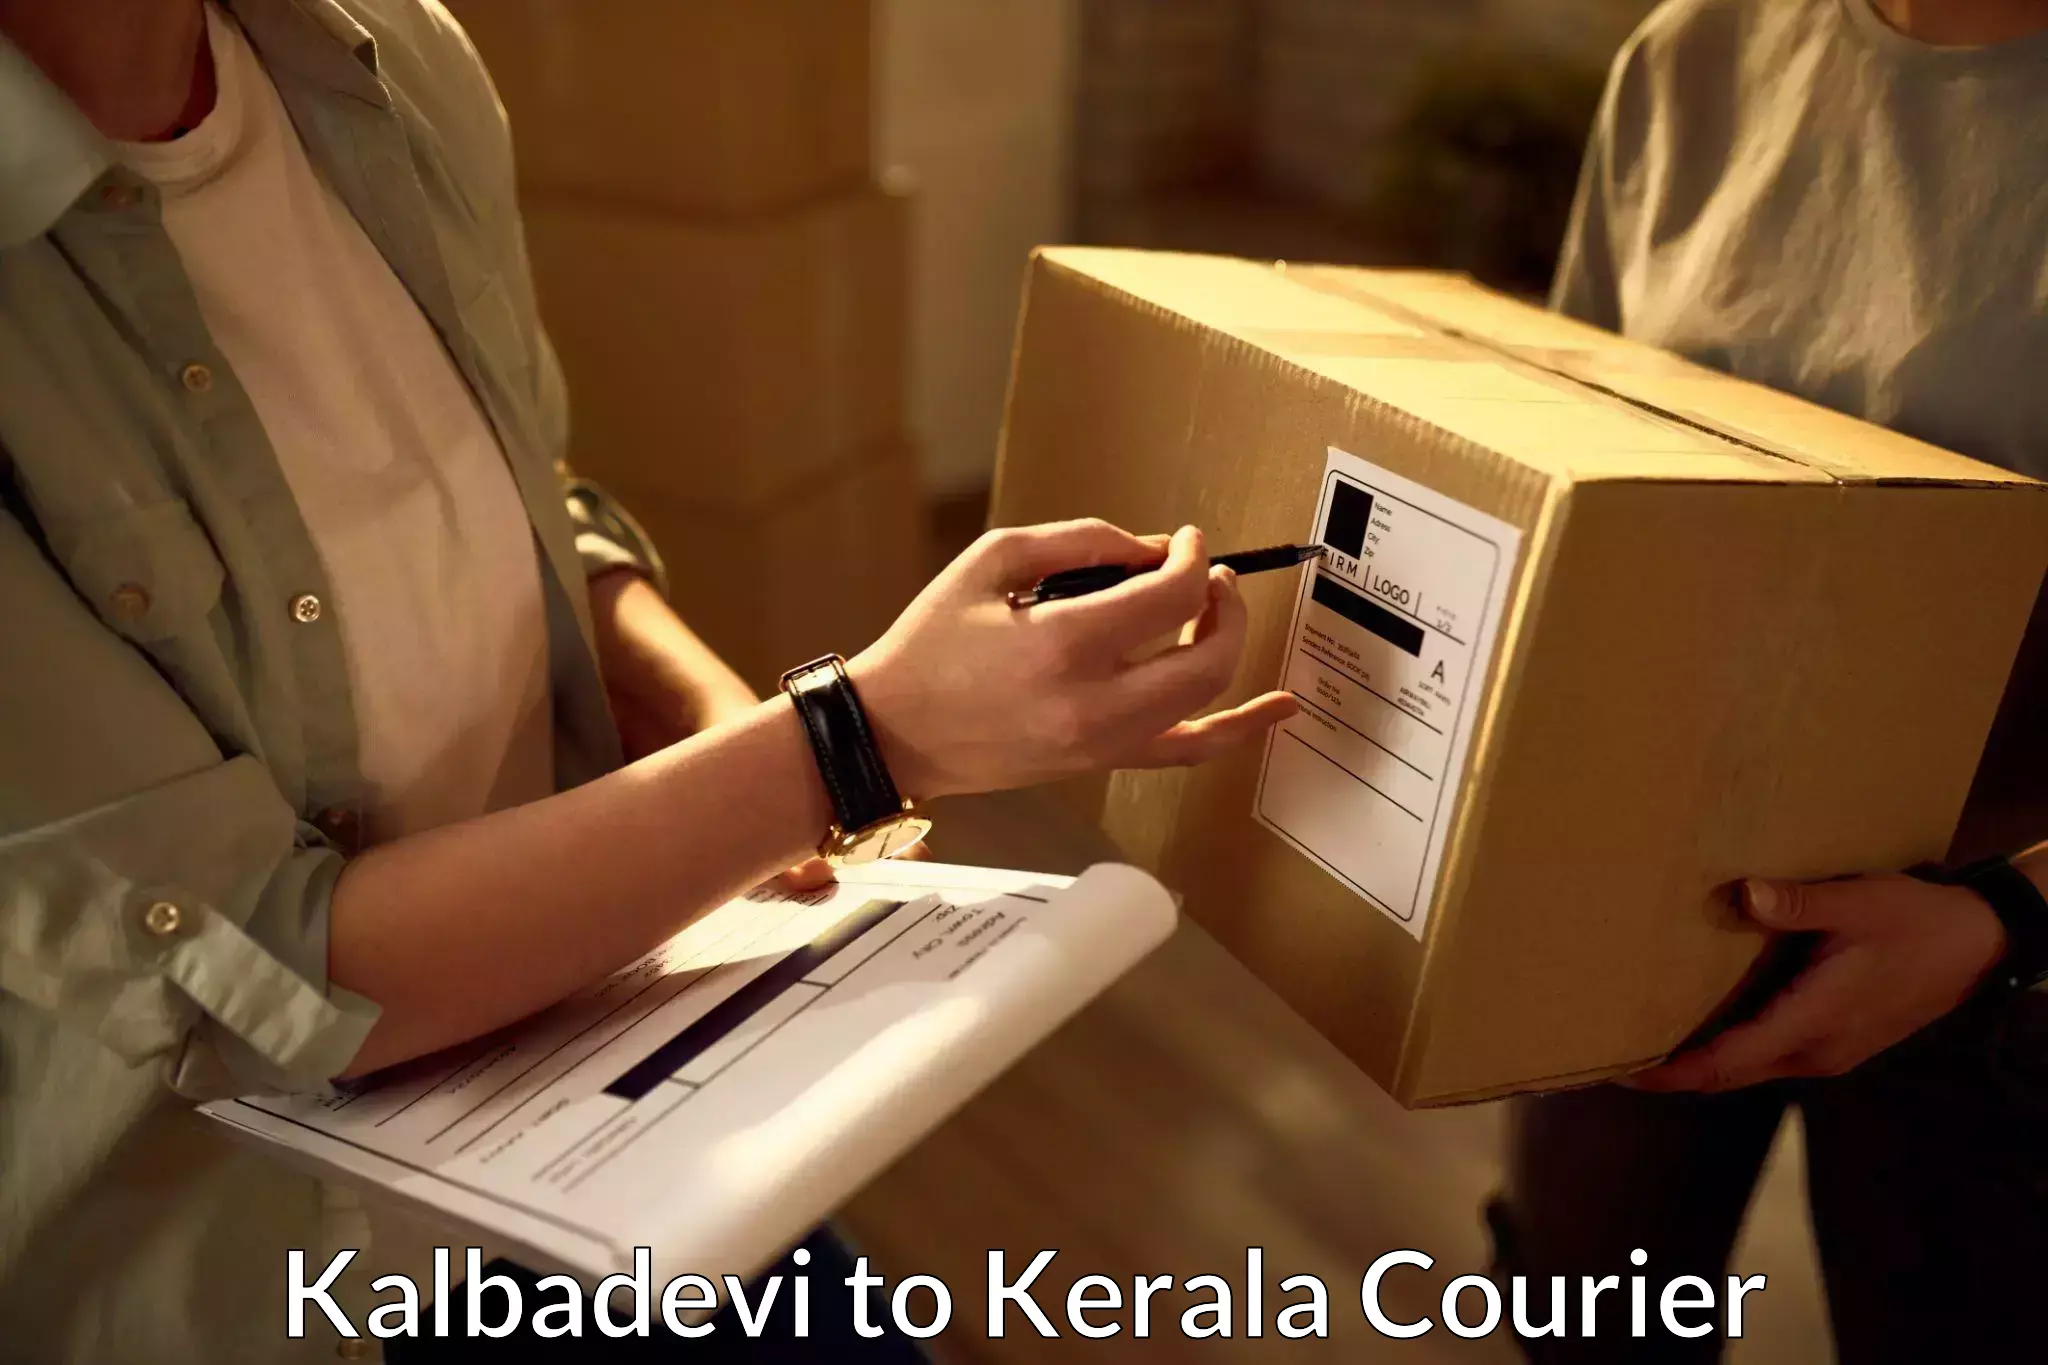 Urban courier service Kalbadevi to Guruvayur